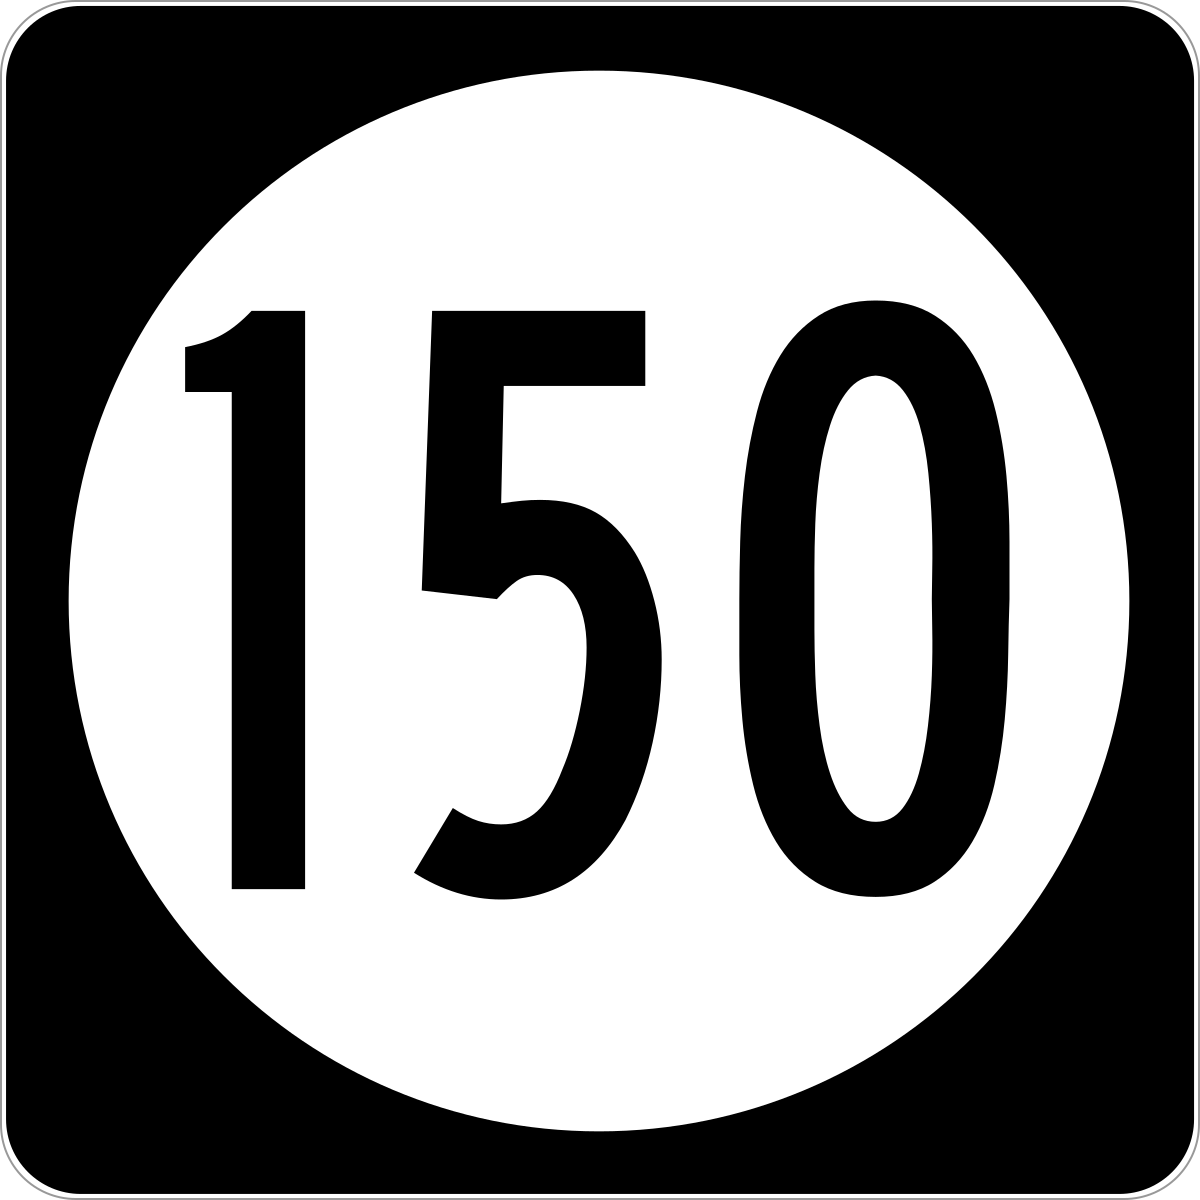 150